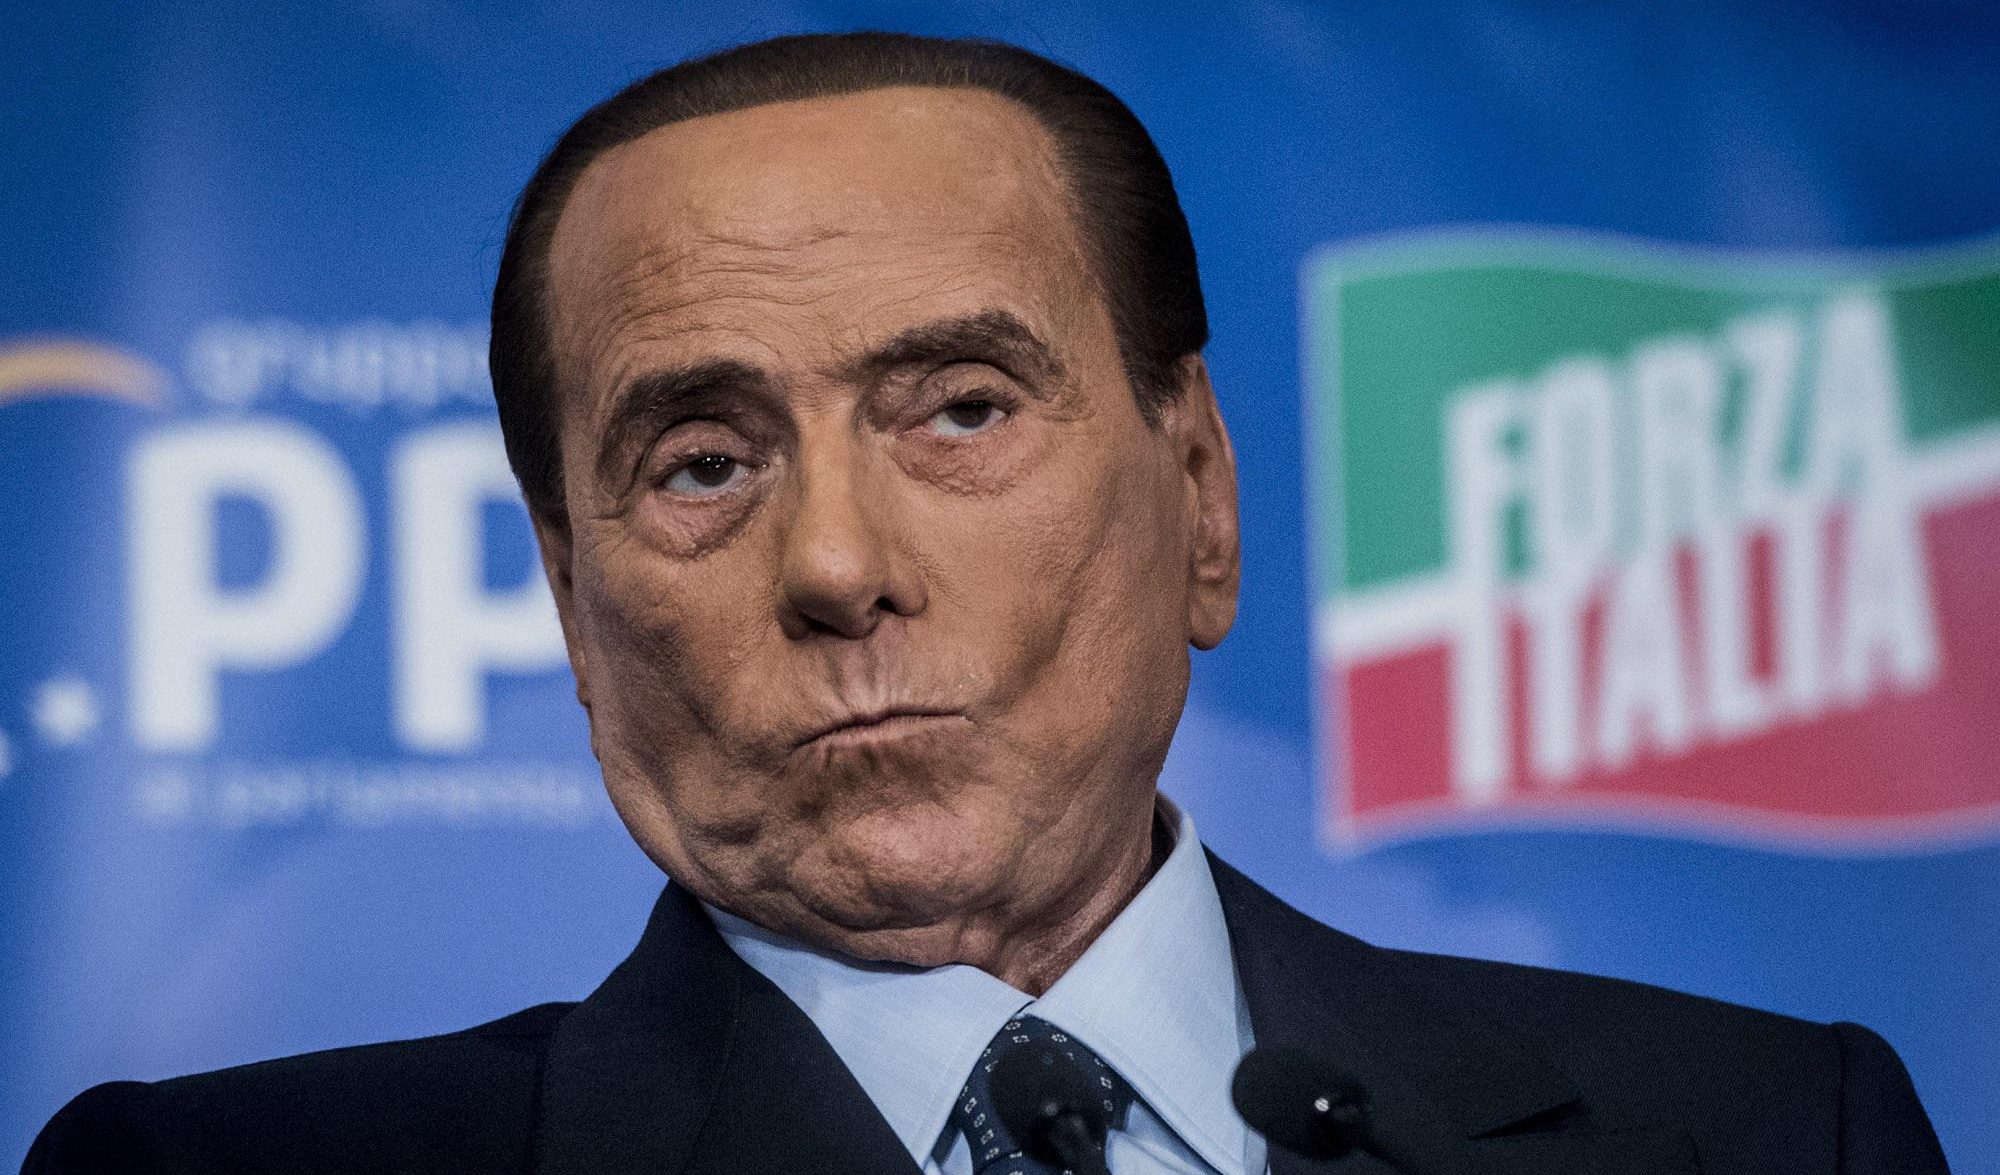 Berlusconi attacca ancora il Pd: "Da loro solo menzogne e insulti, copiano anche le nostre idee..."